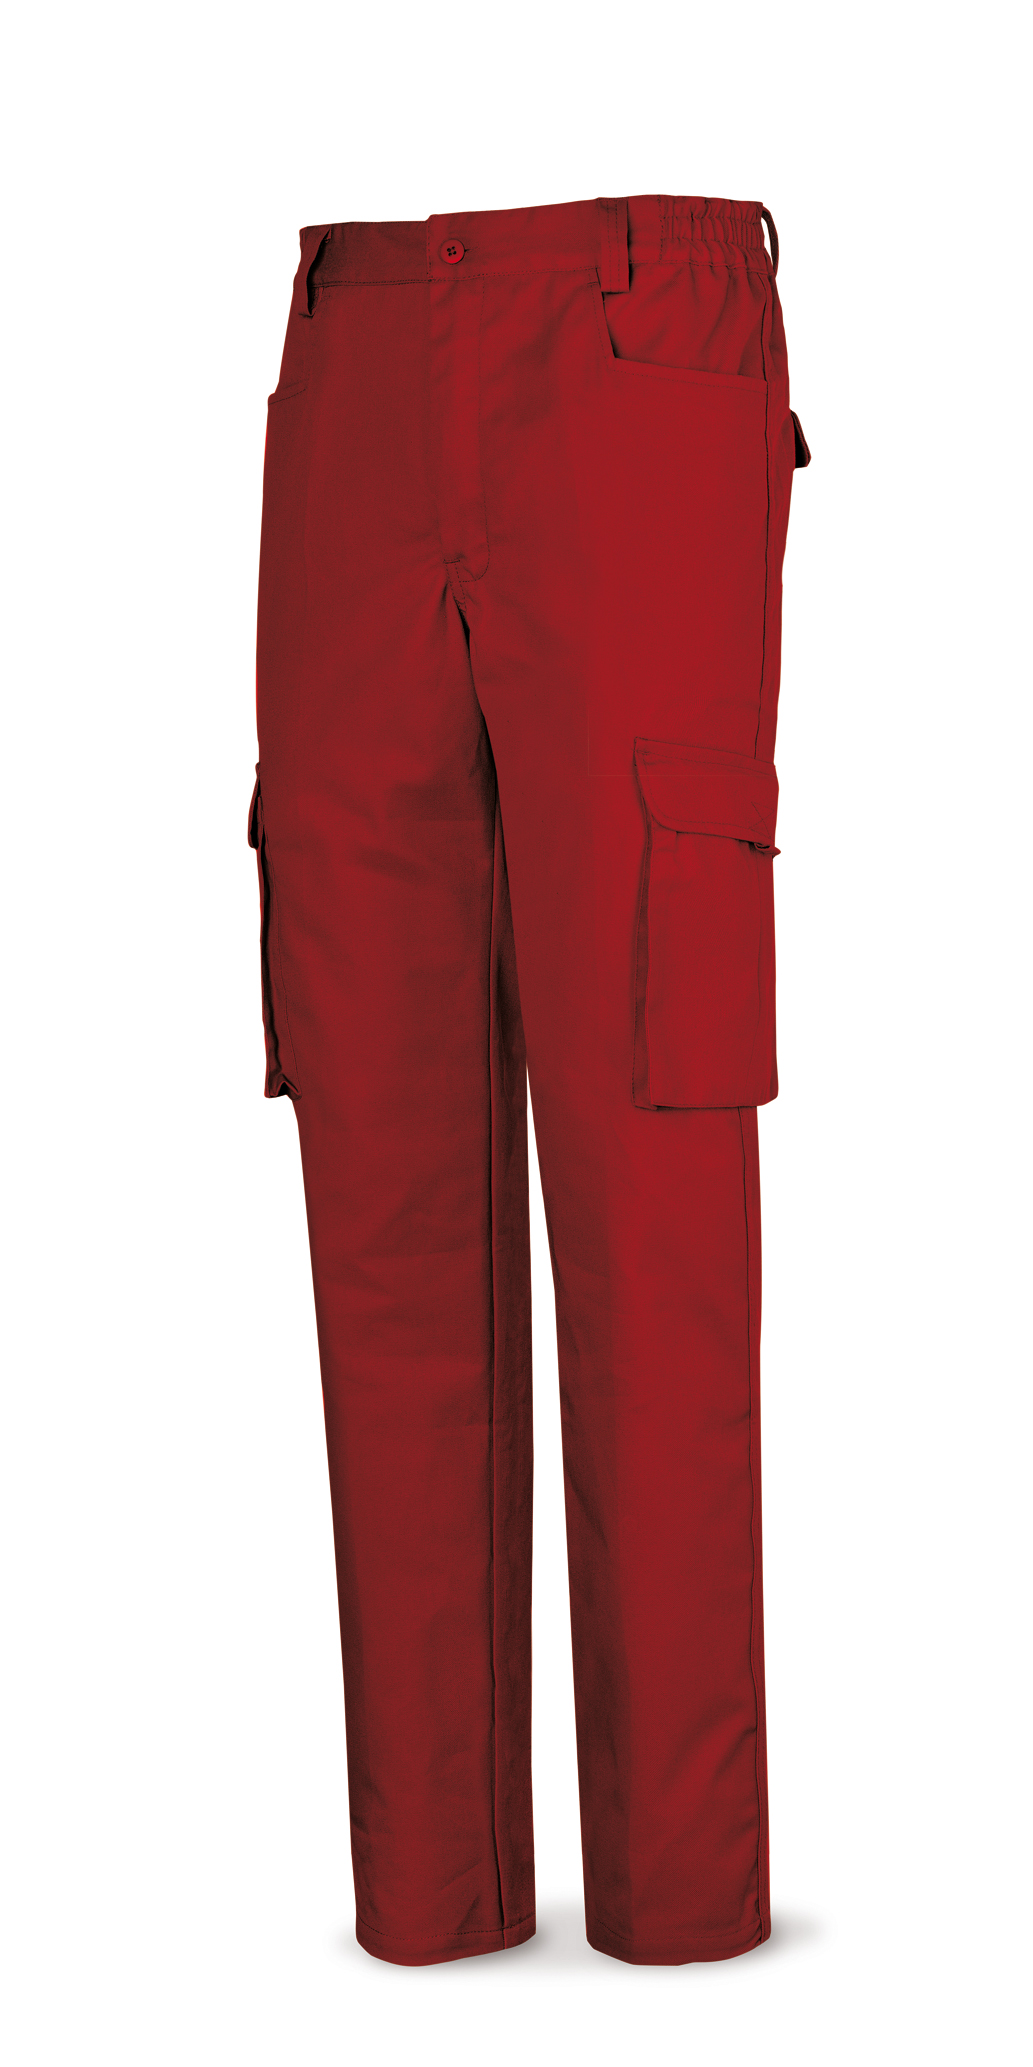 Pantalon tergal 1ª rojo 38